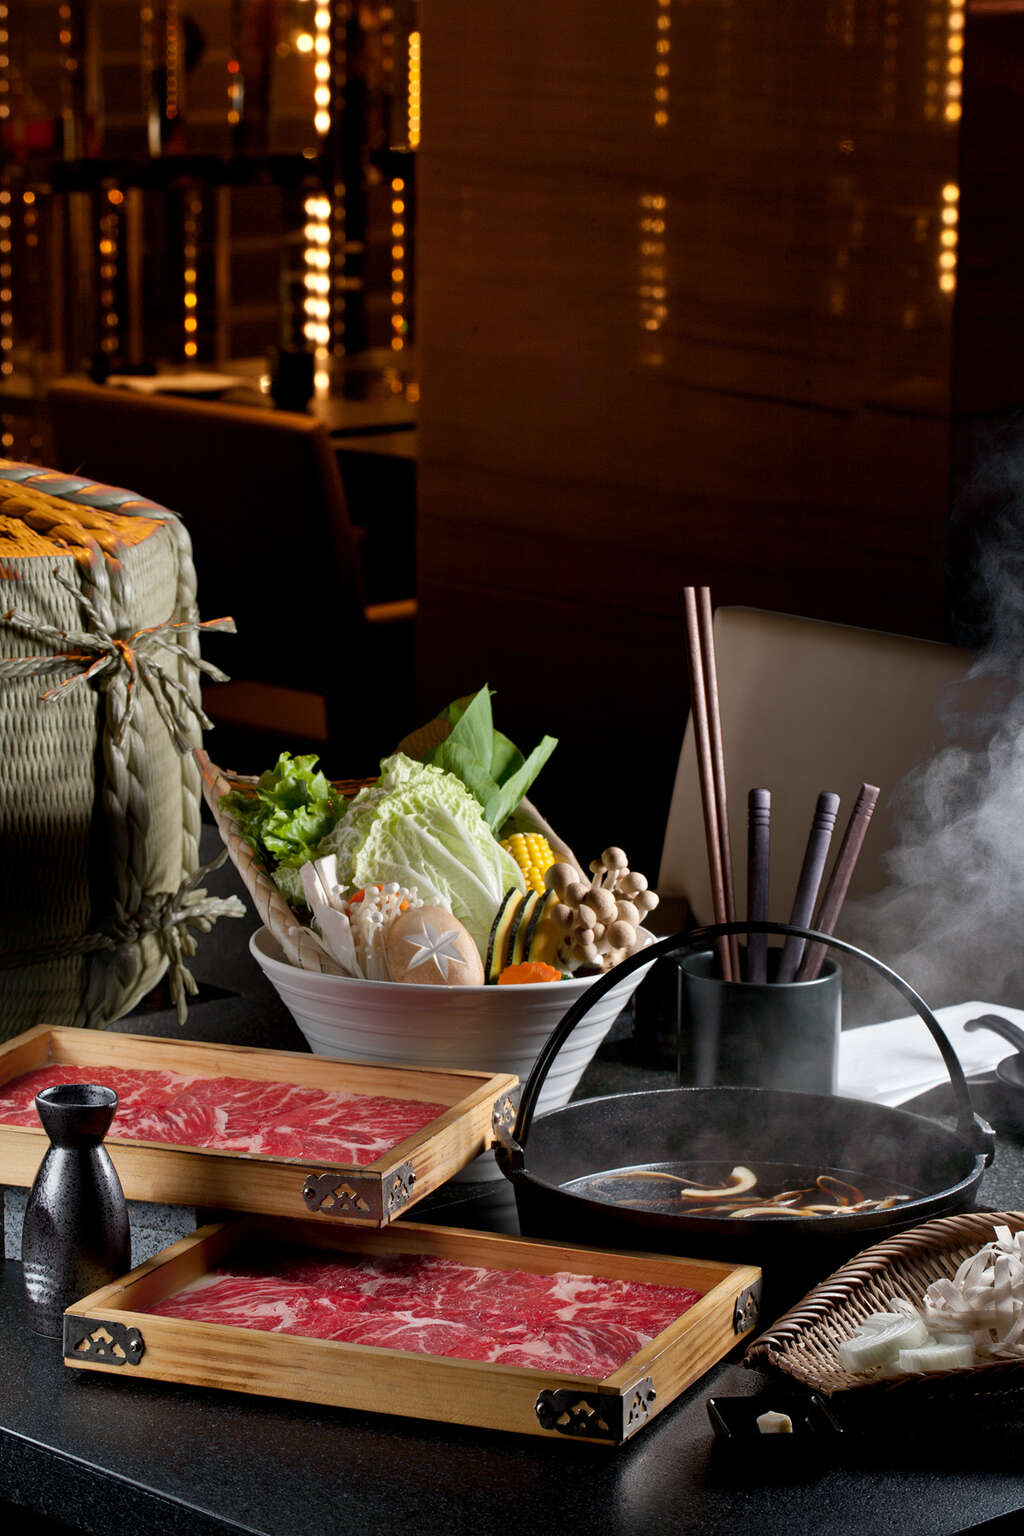 星级旅馆翰品酒店「品」日式锅物已报名参赛，主打寿喜烧及涮涮锅加上主厨特制手工丸。